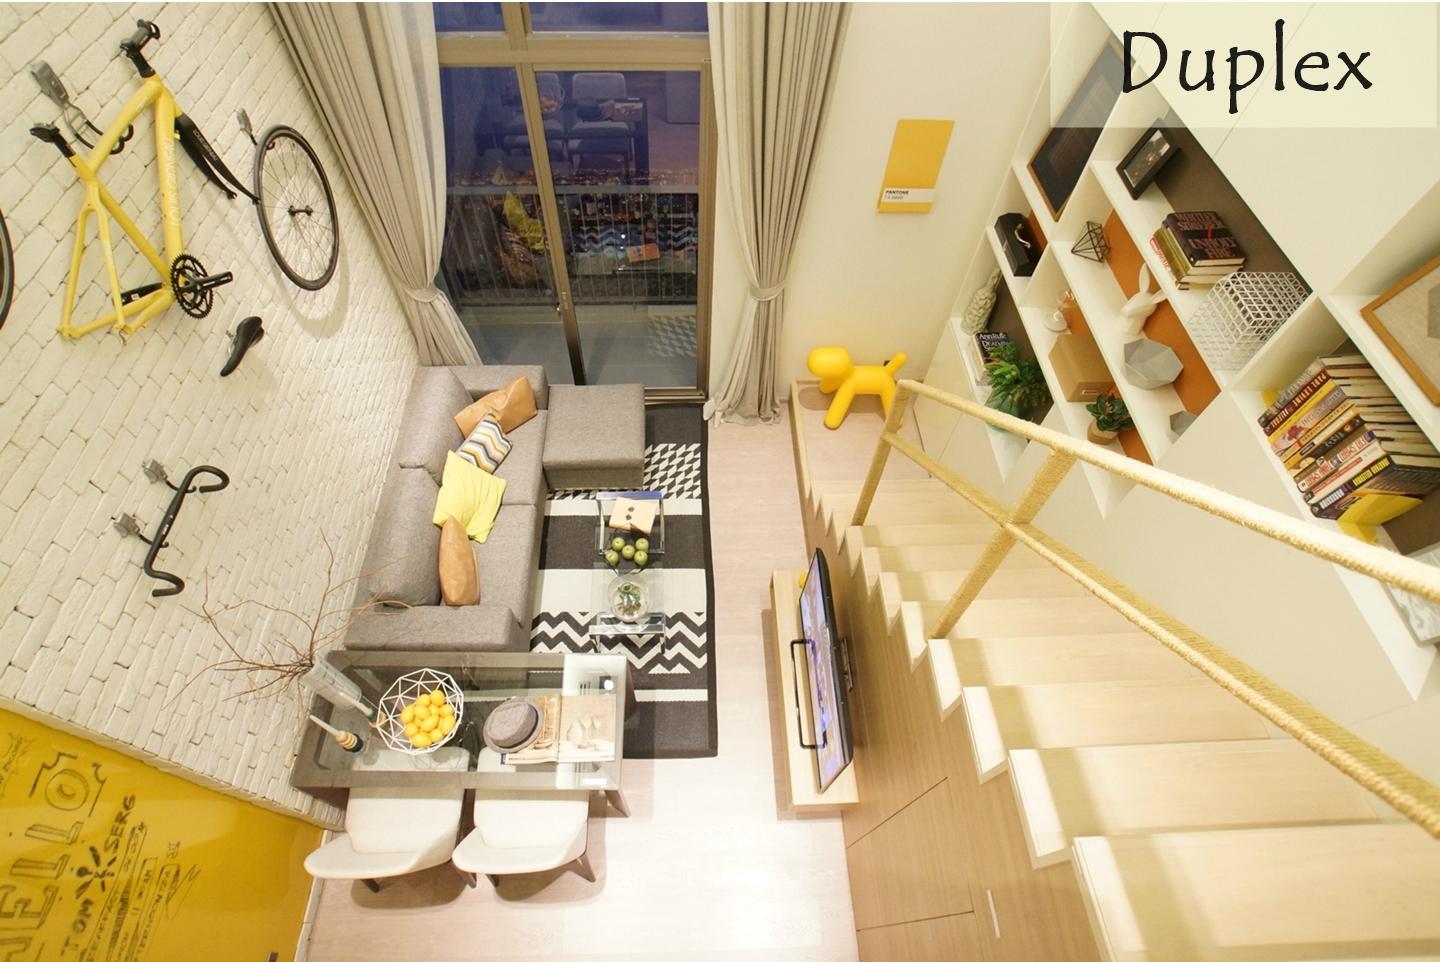 รูปบทความ ‘ห้อง Duplex’ คอนโดแบบ Double Space ตอบโจทย์ไลฟ์สไตล์ของคนอยากมีบ้าน